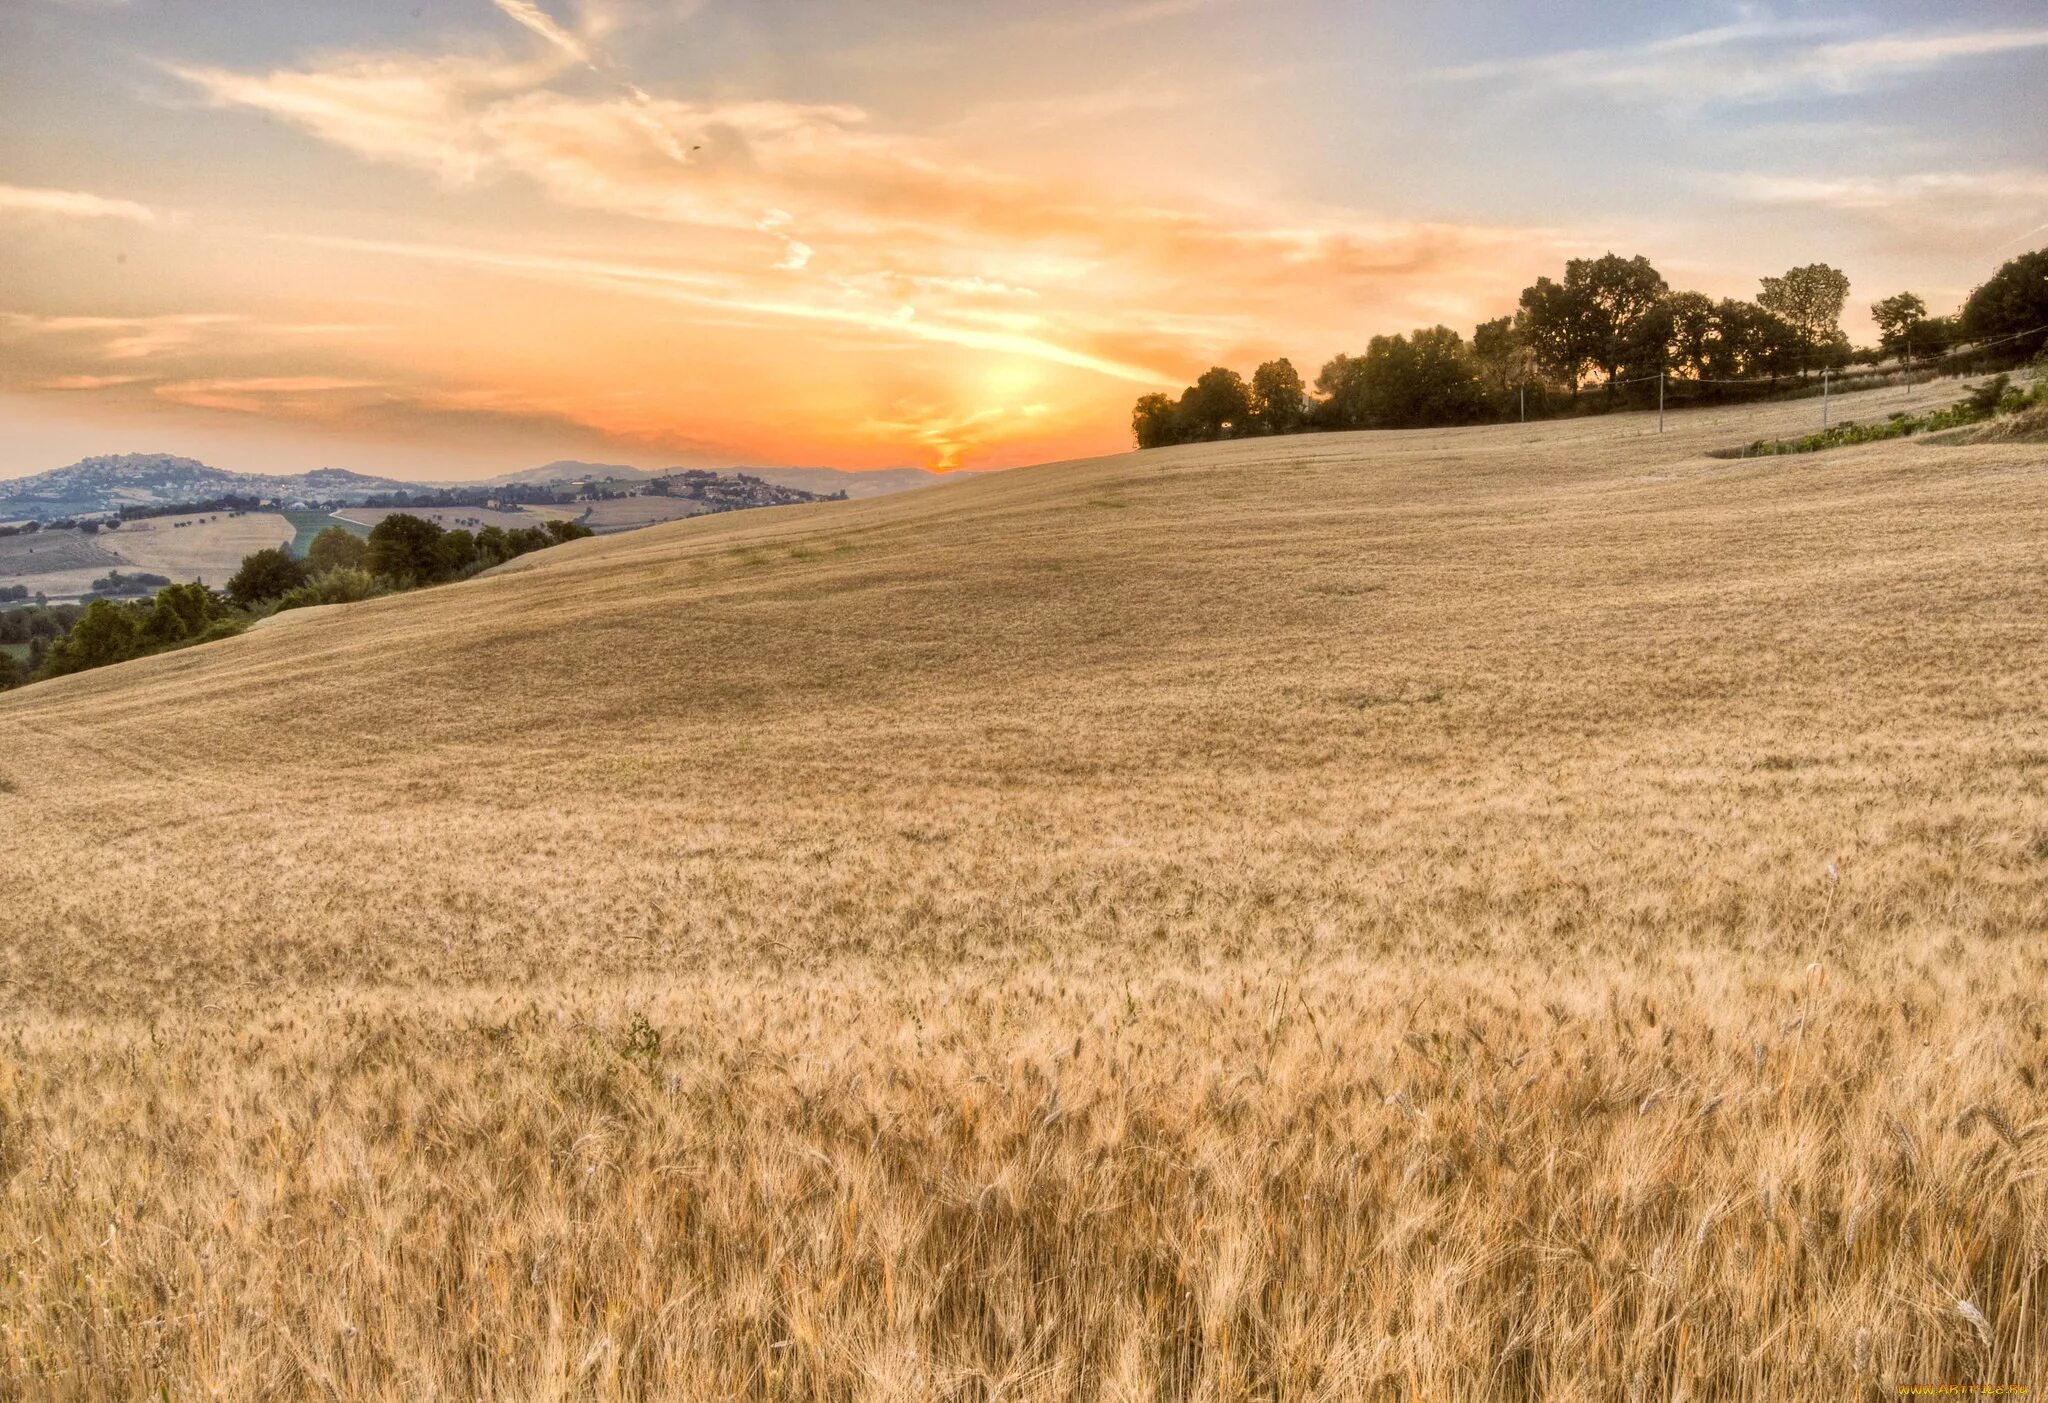 Картинка поле. В поле. Пшеничное поле. Пейзаж поле. Пейзаж поле пшеницы.